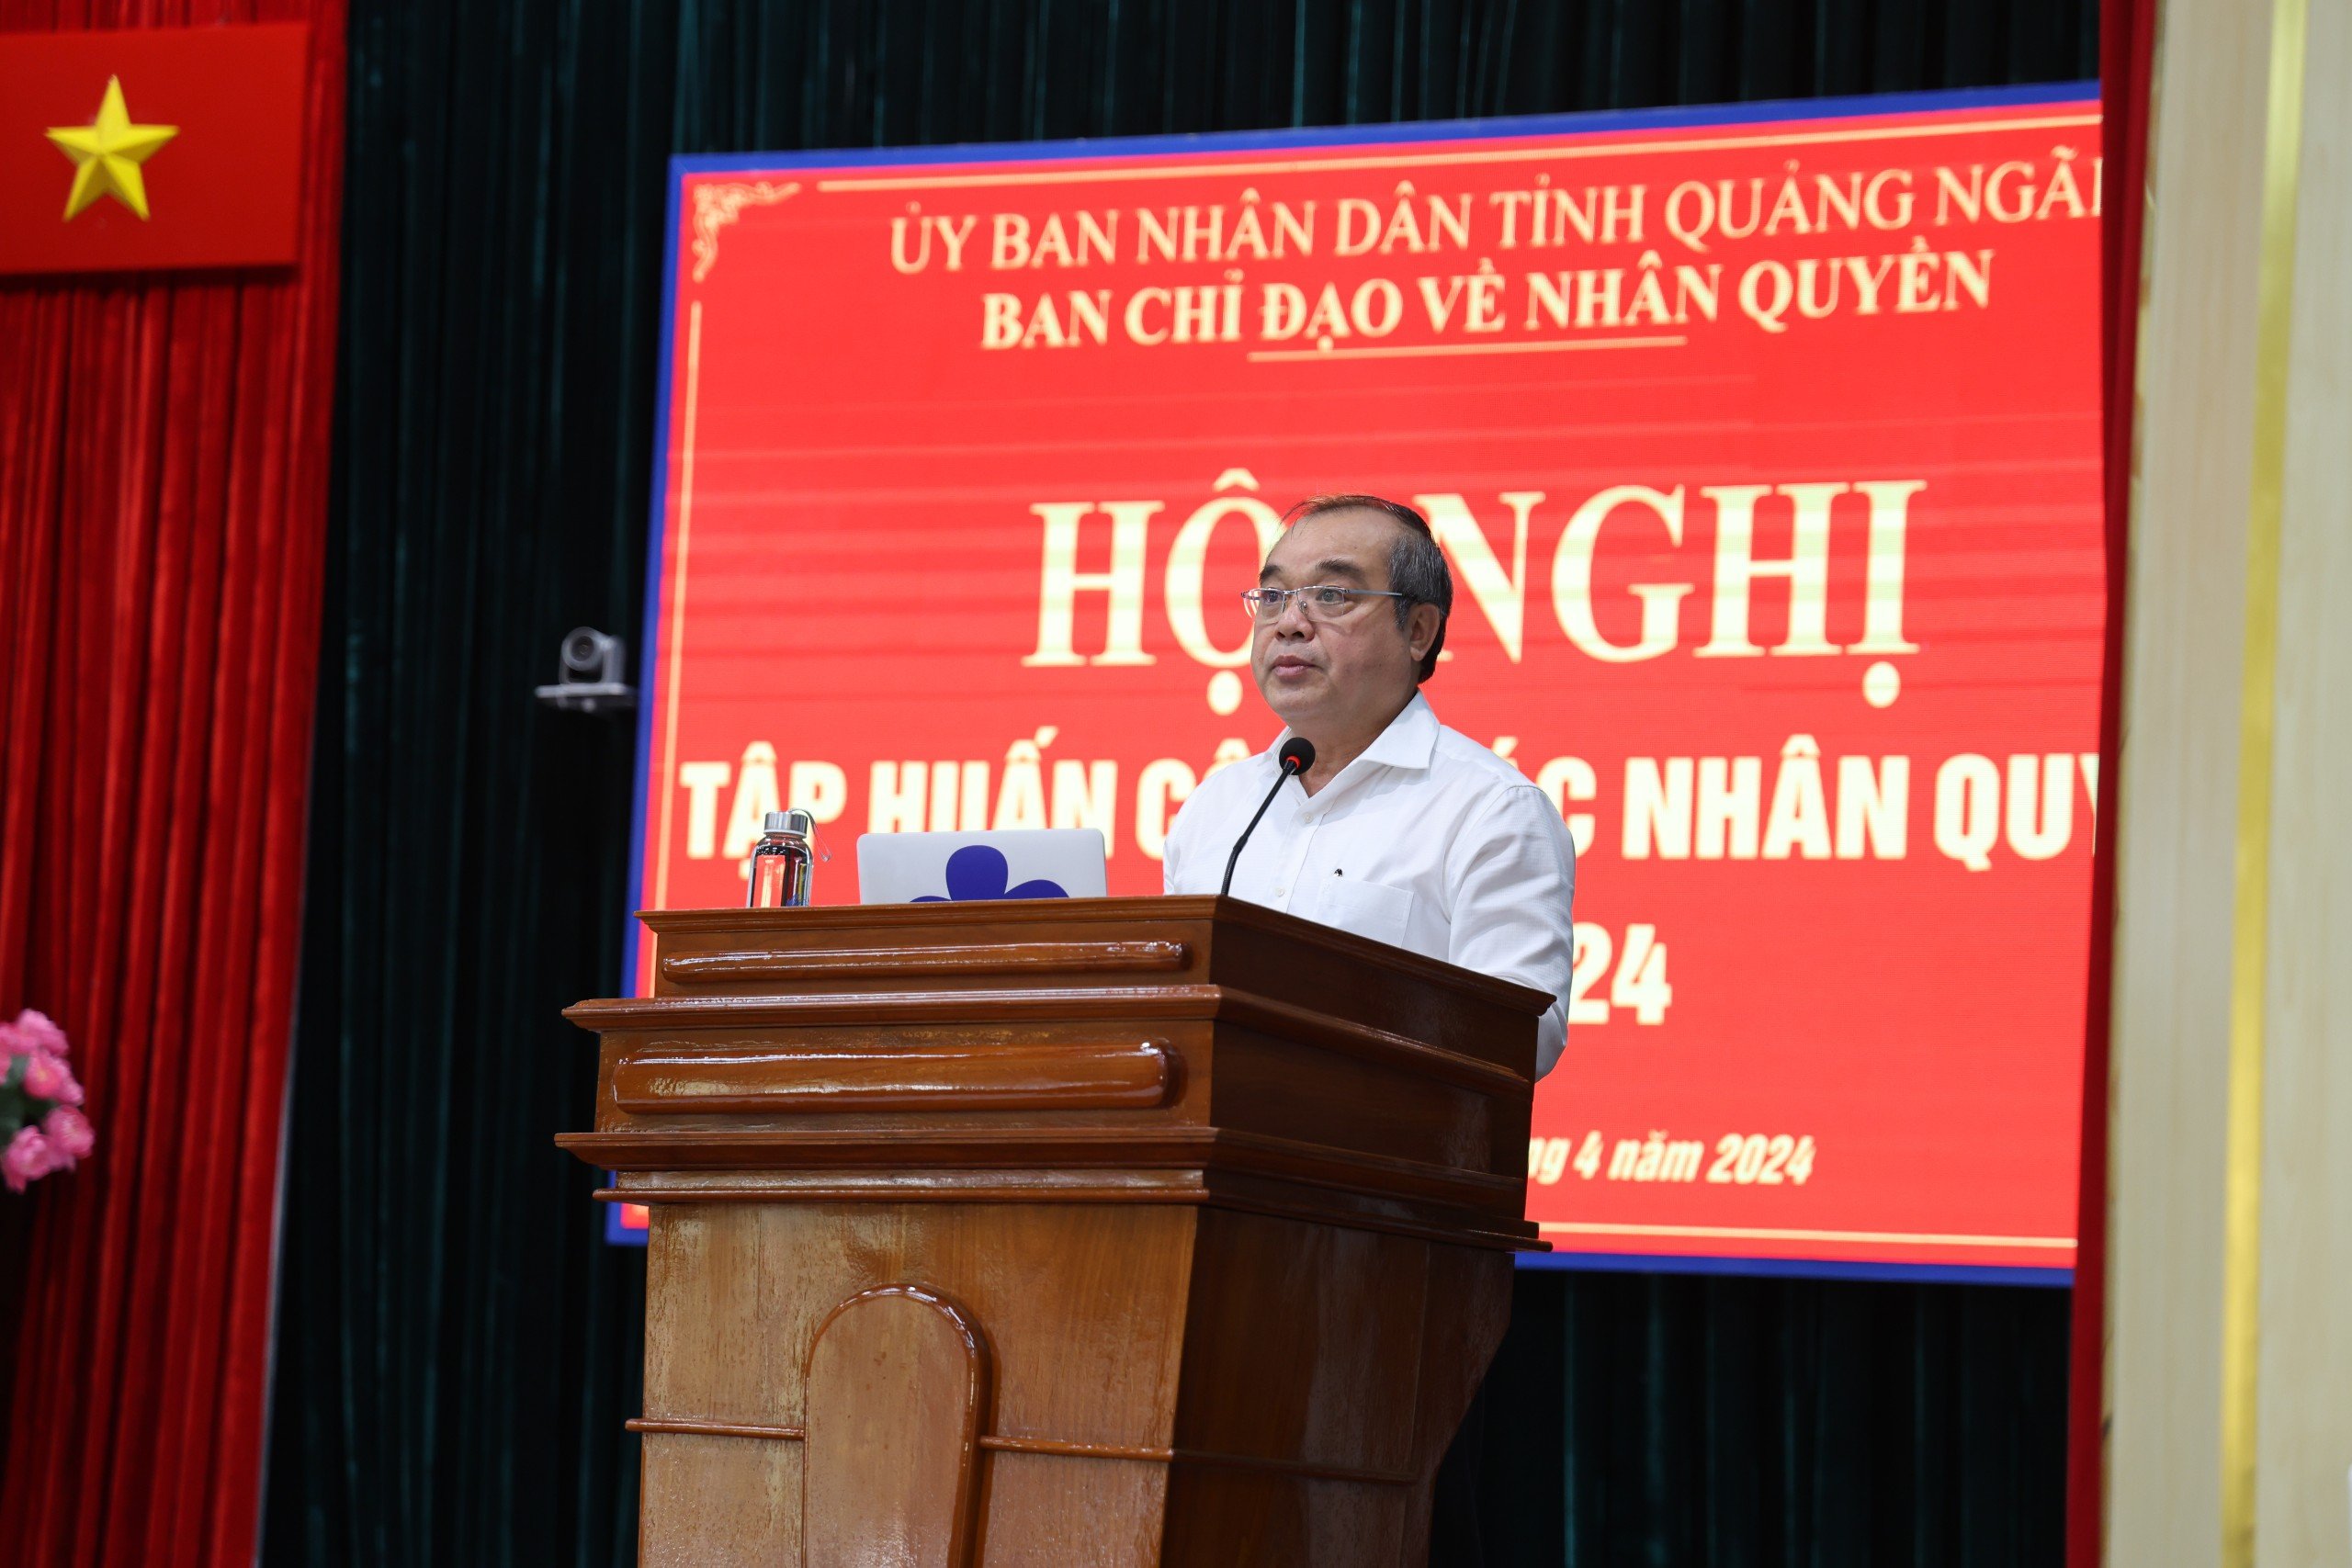 Phó Chủ tịch Thường trực UBND tỉnh - Trưởng Ban chỉ đạo Nhân quyền tỉnh Trần Hoàng Tuấn